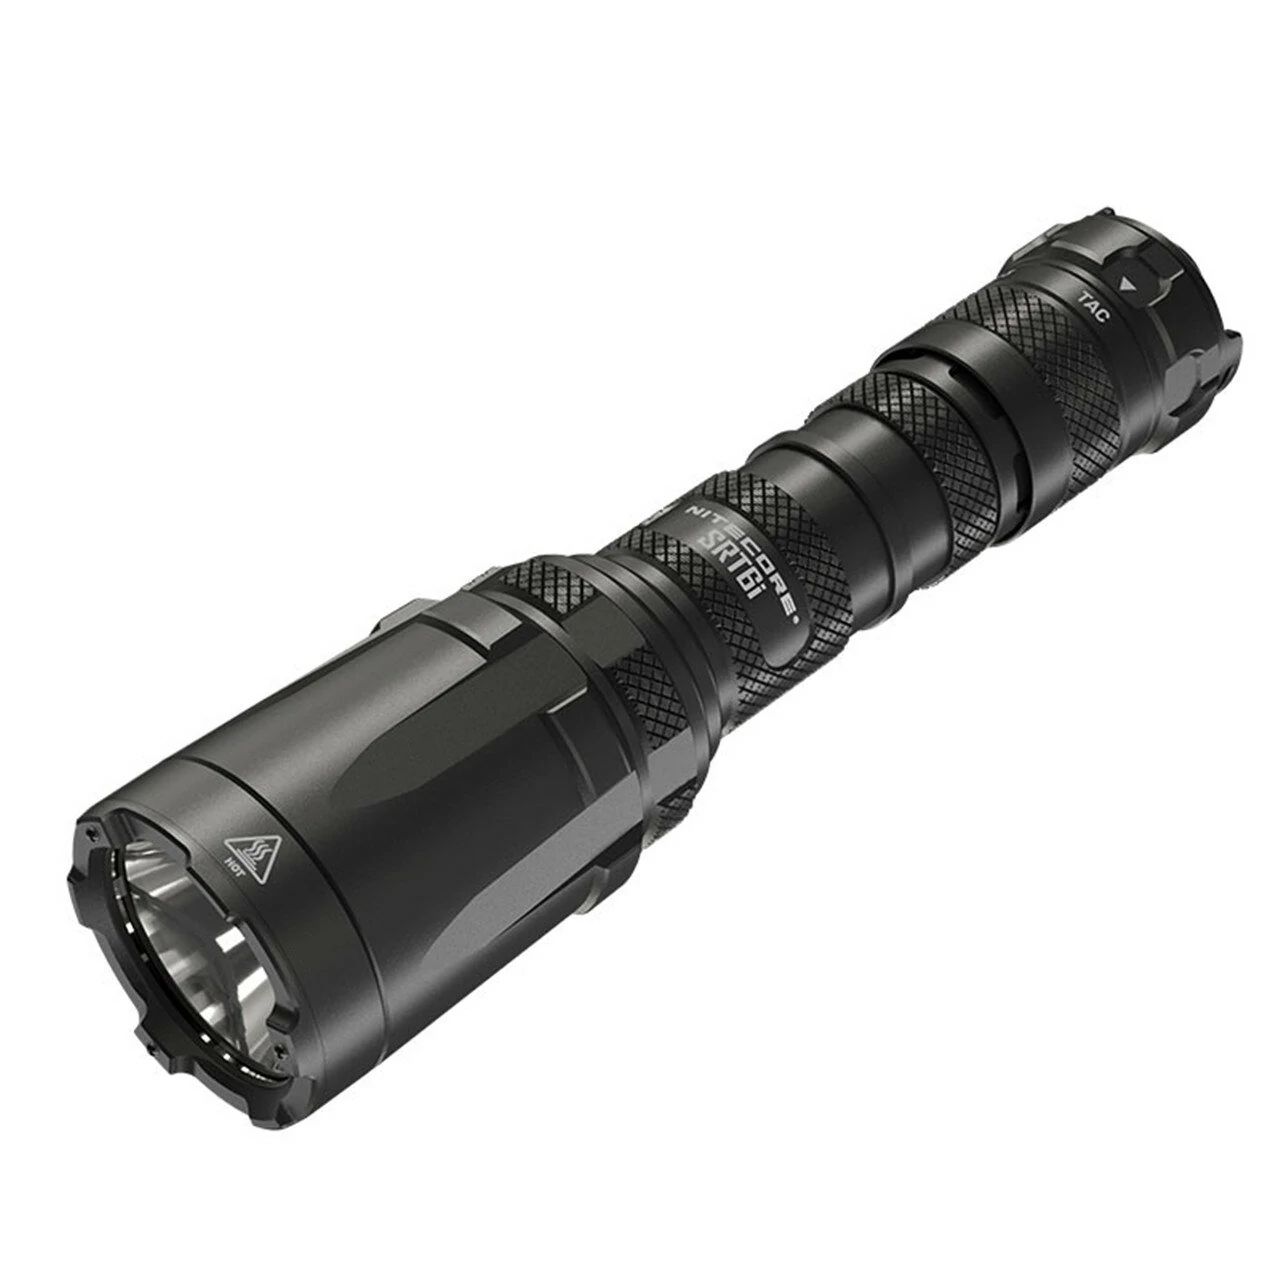 Στα 83.37€ από αποNITECORE SRT6i 2100lm USB Charging Rechargeable LED Flashlight Strong Powerful Tactical Torch Camping Hunting LED Lamp